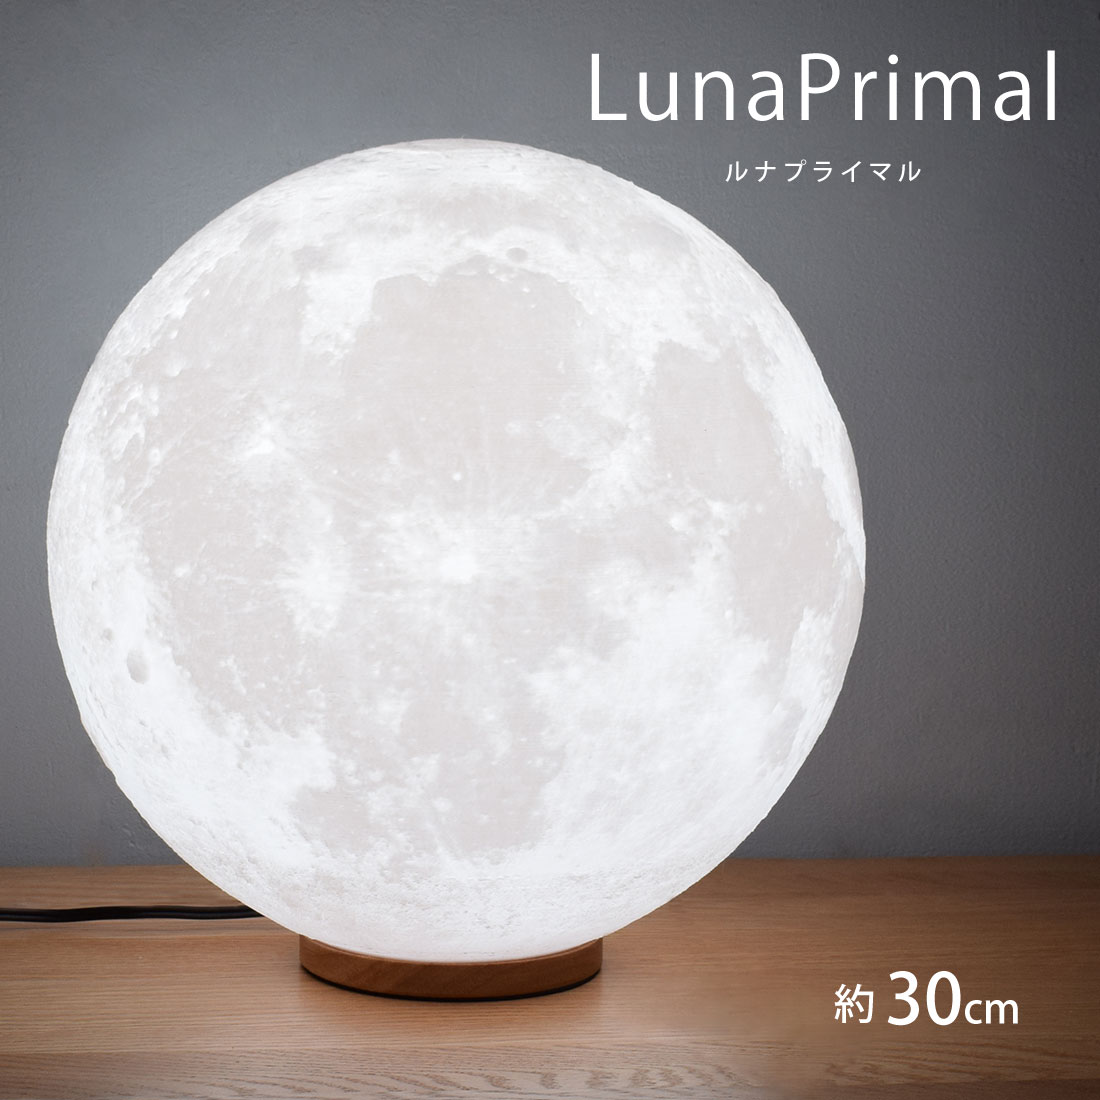 【楽天市場】月ライト 25cm LED 間接照明 木製台座 テーブルランプ